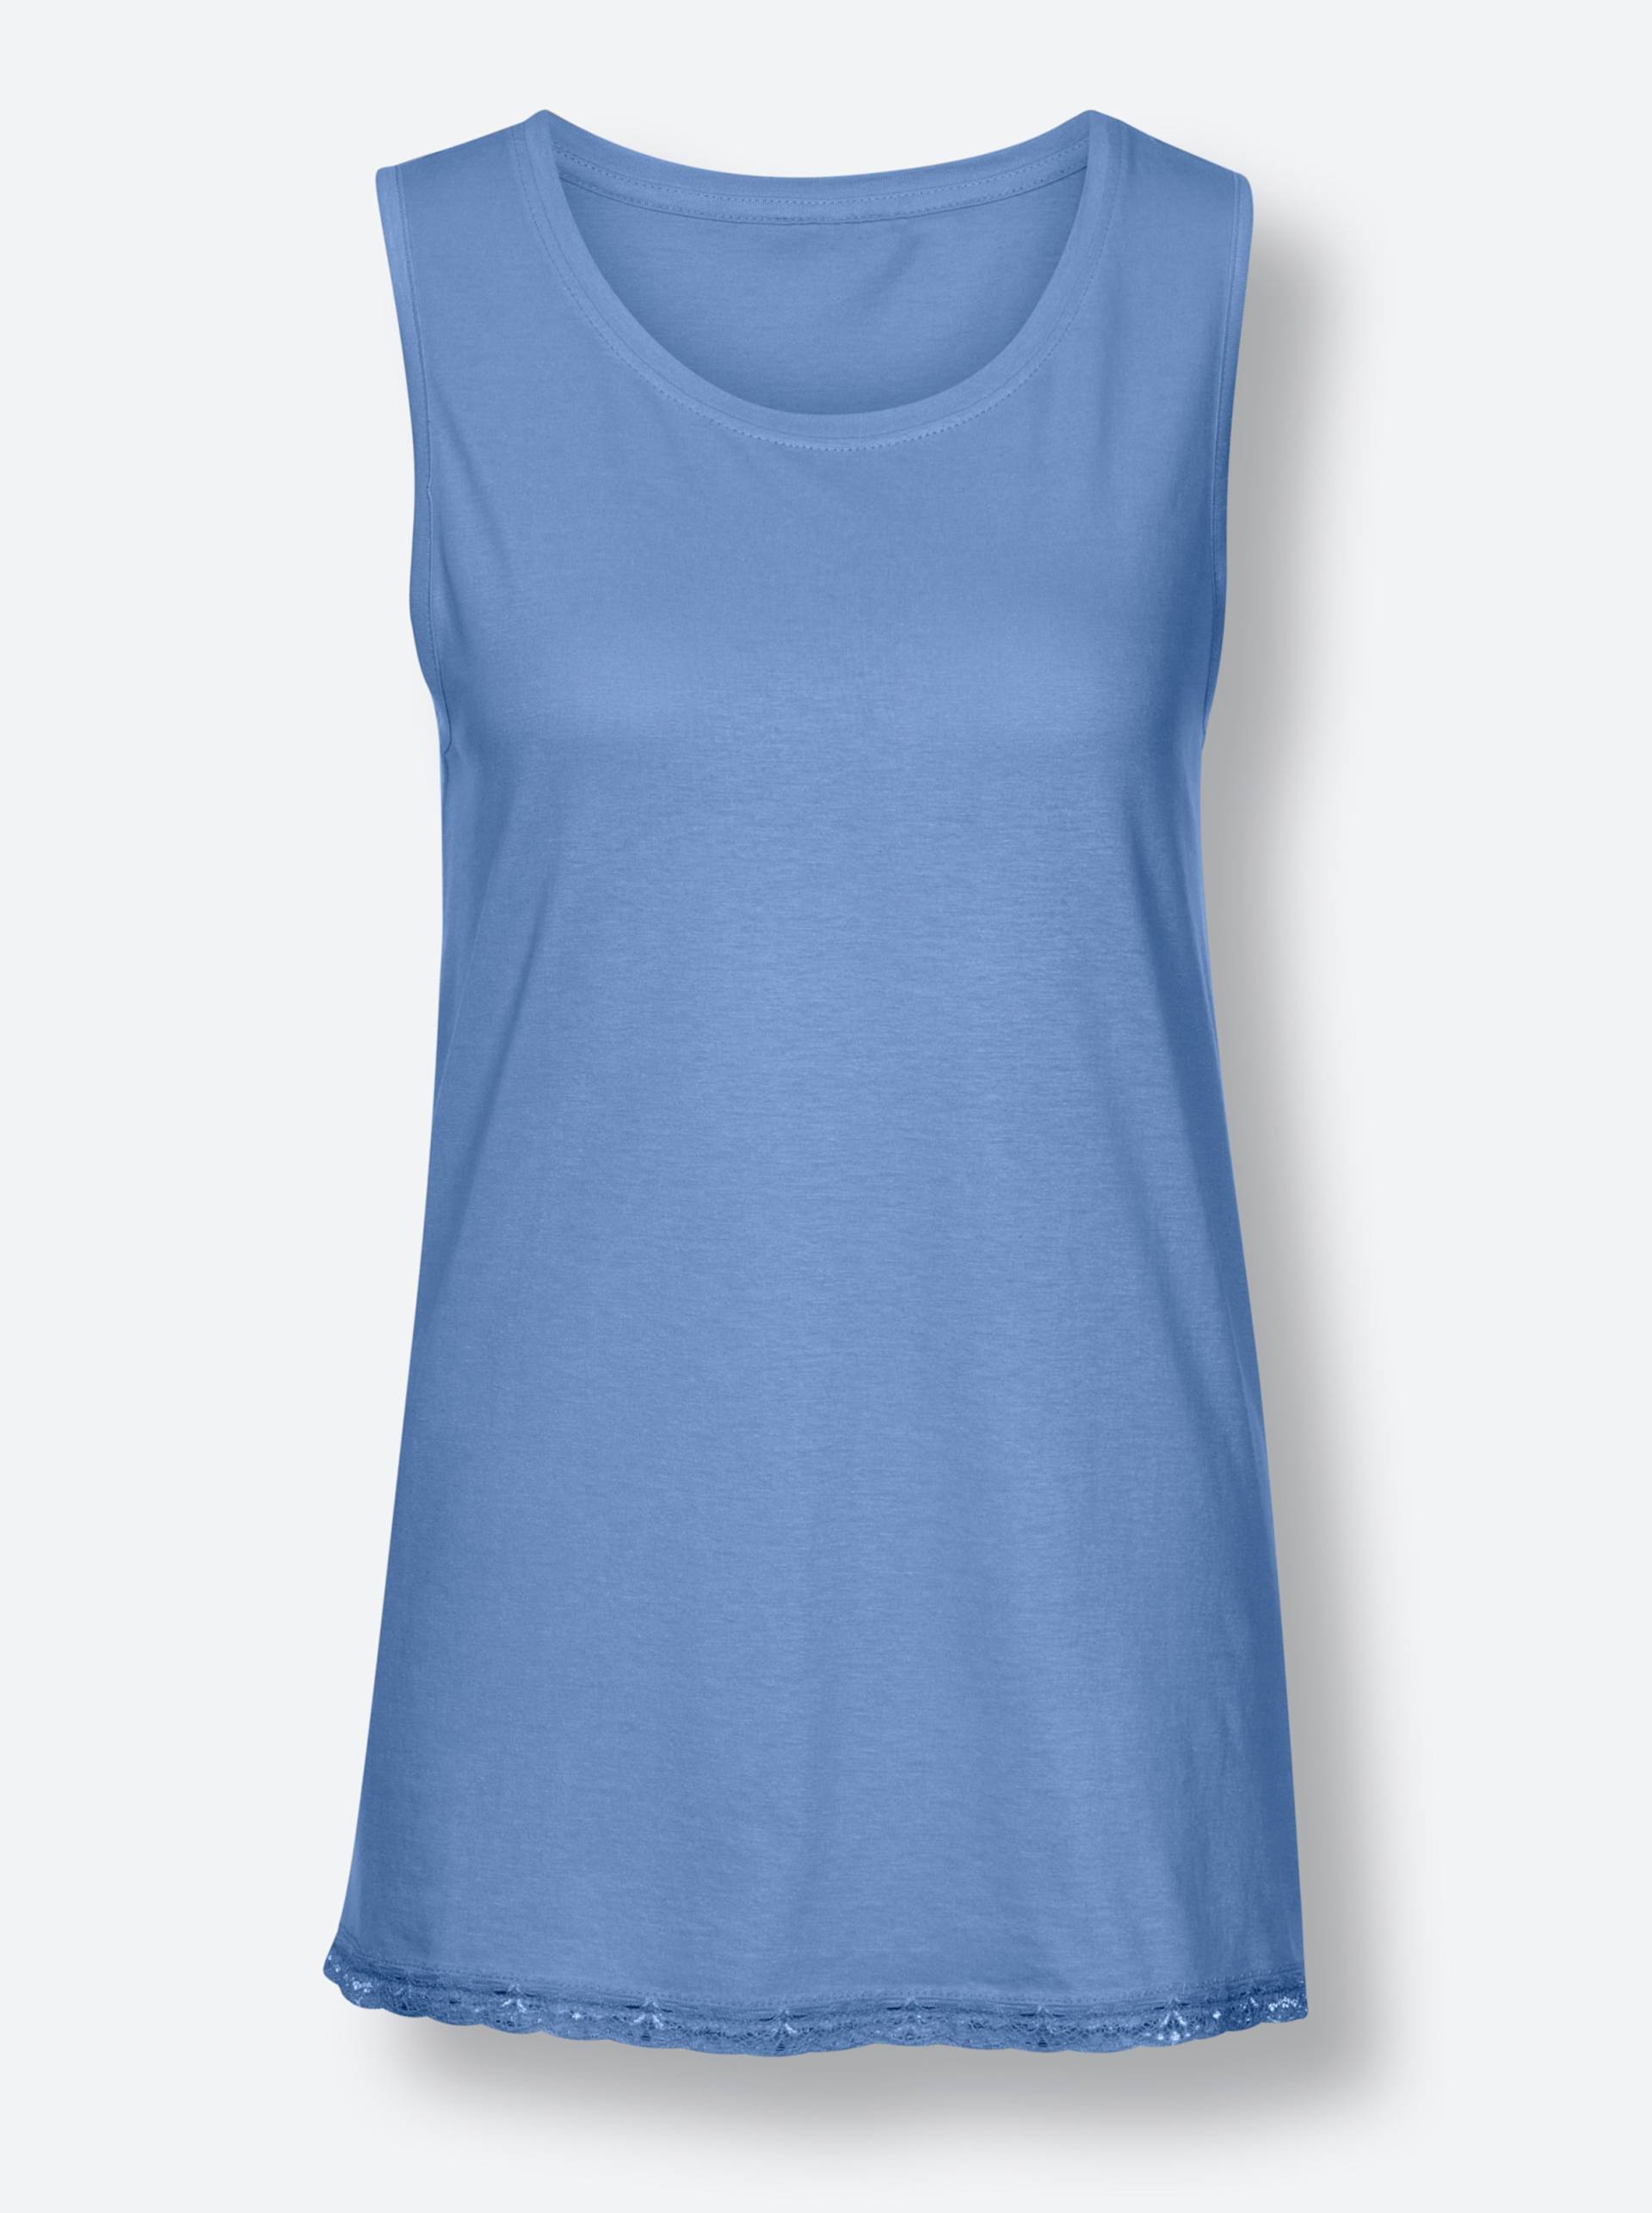 Schlafanzug-Shirt in himmelblau von wäschepur